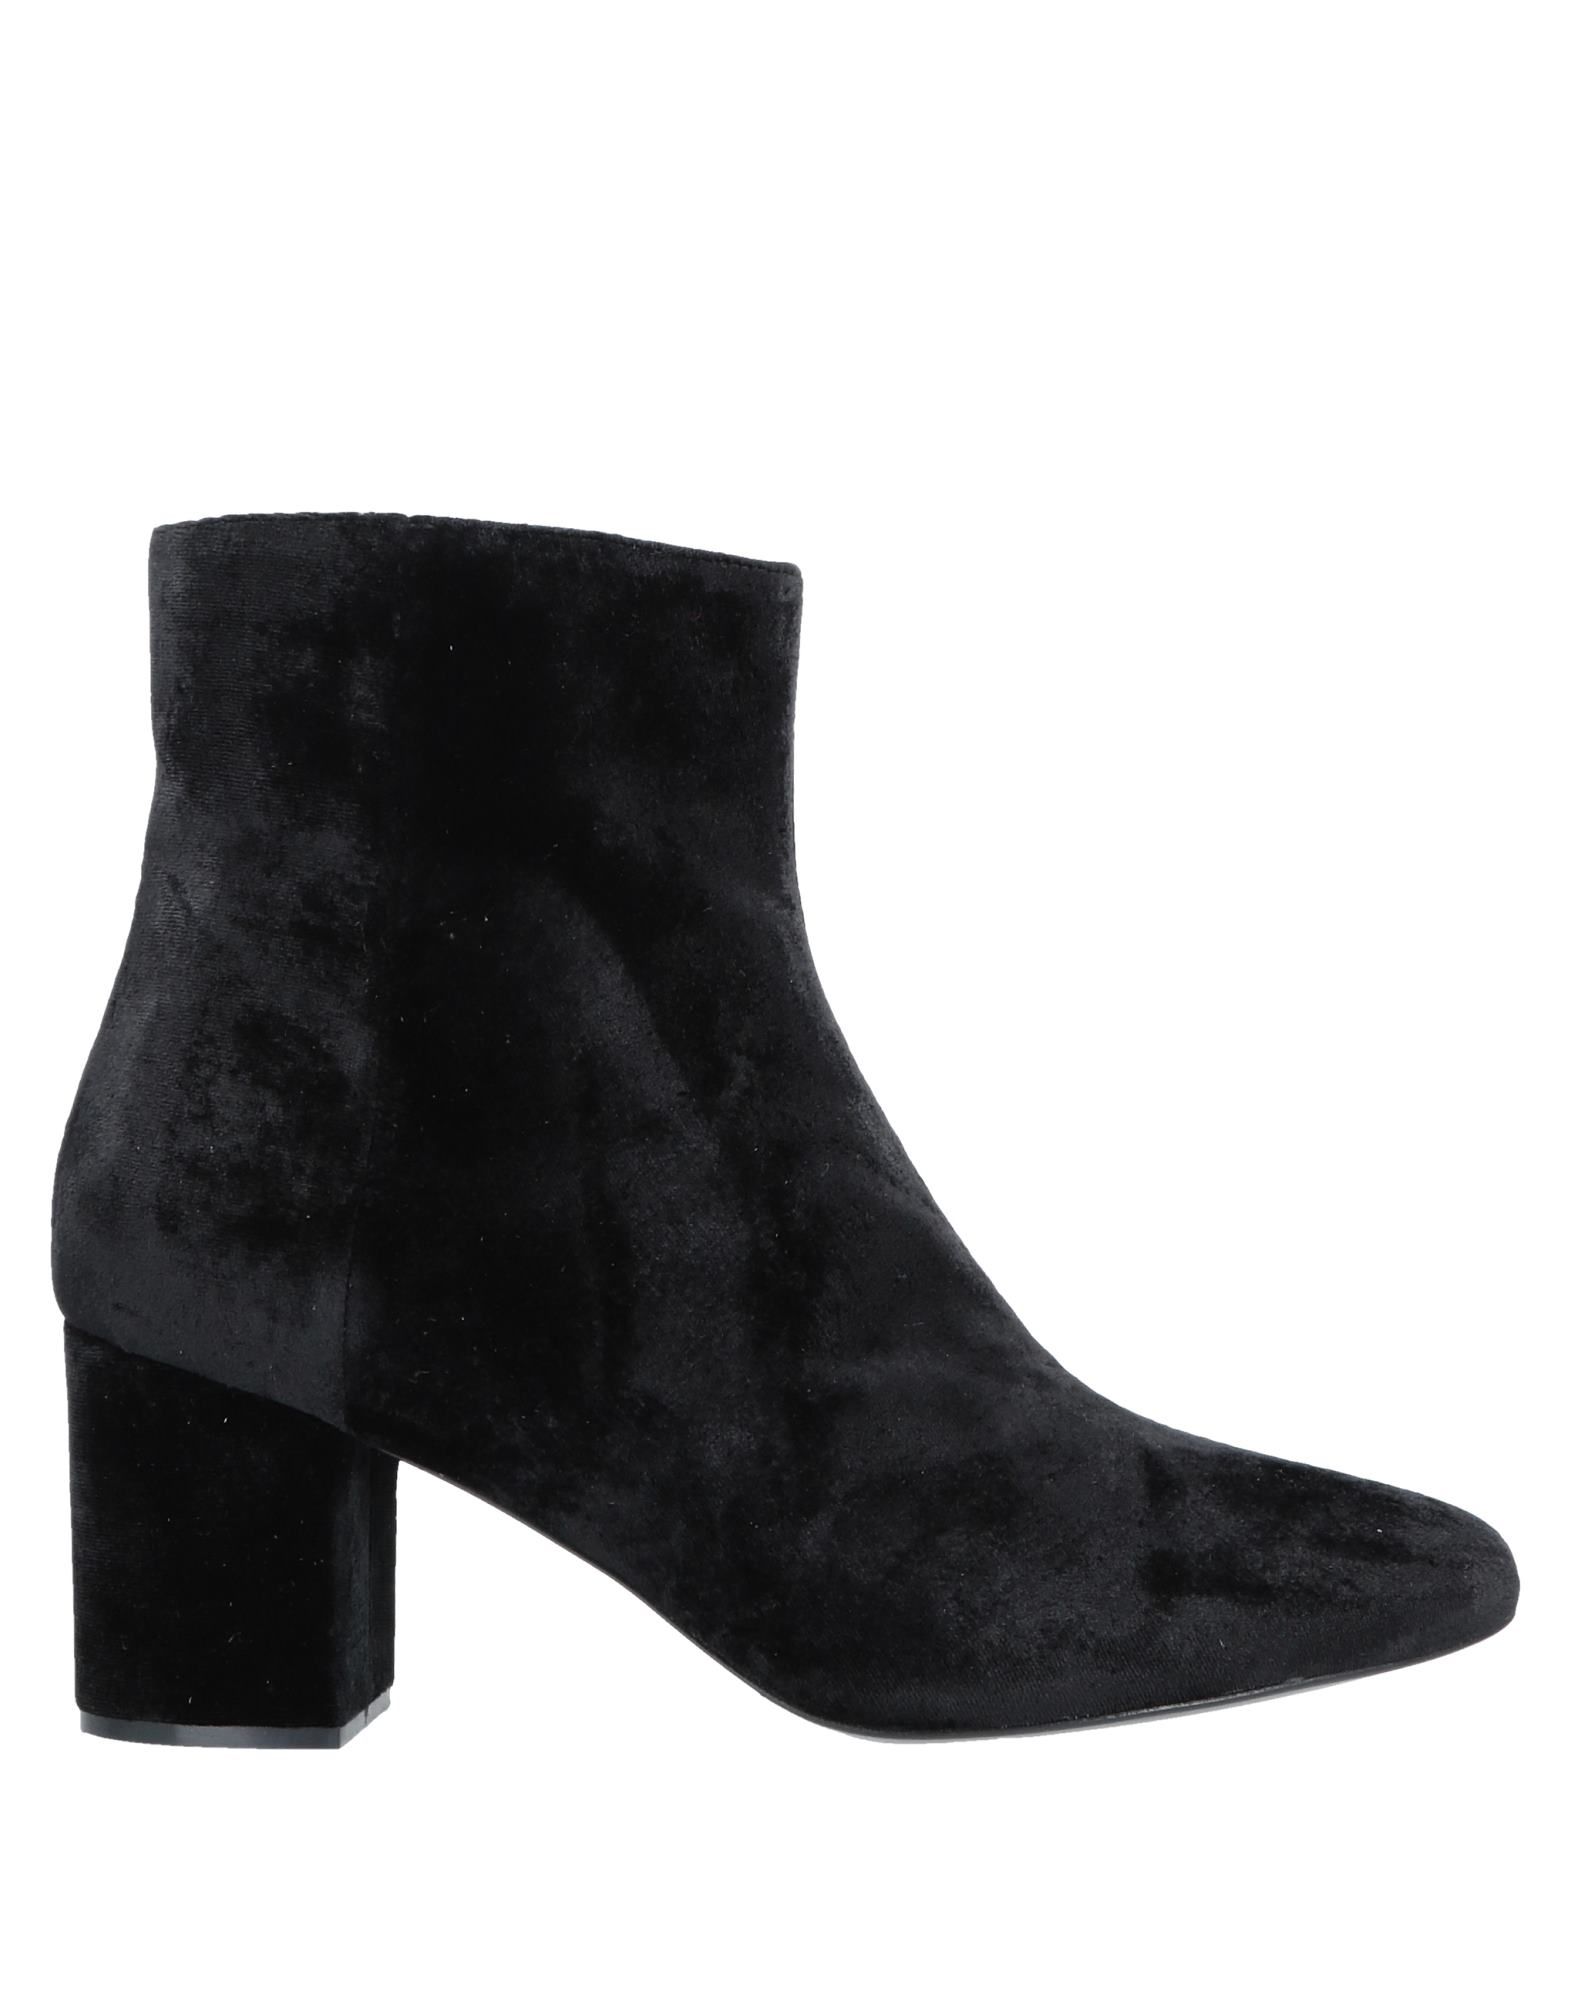 Shop Twinset Woman Ankle Boots Black Size 6 Textile Fibers